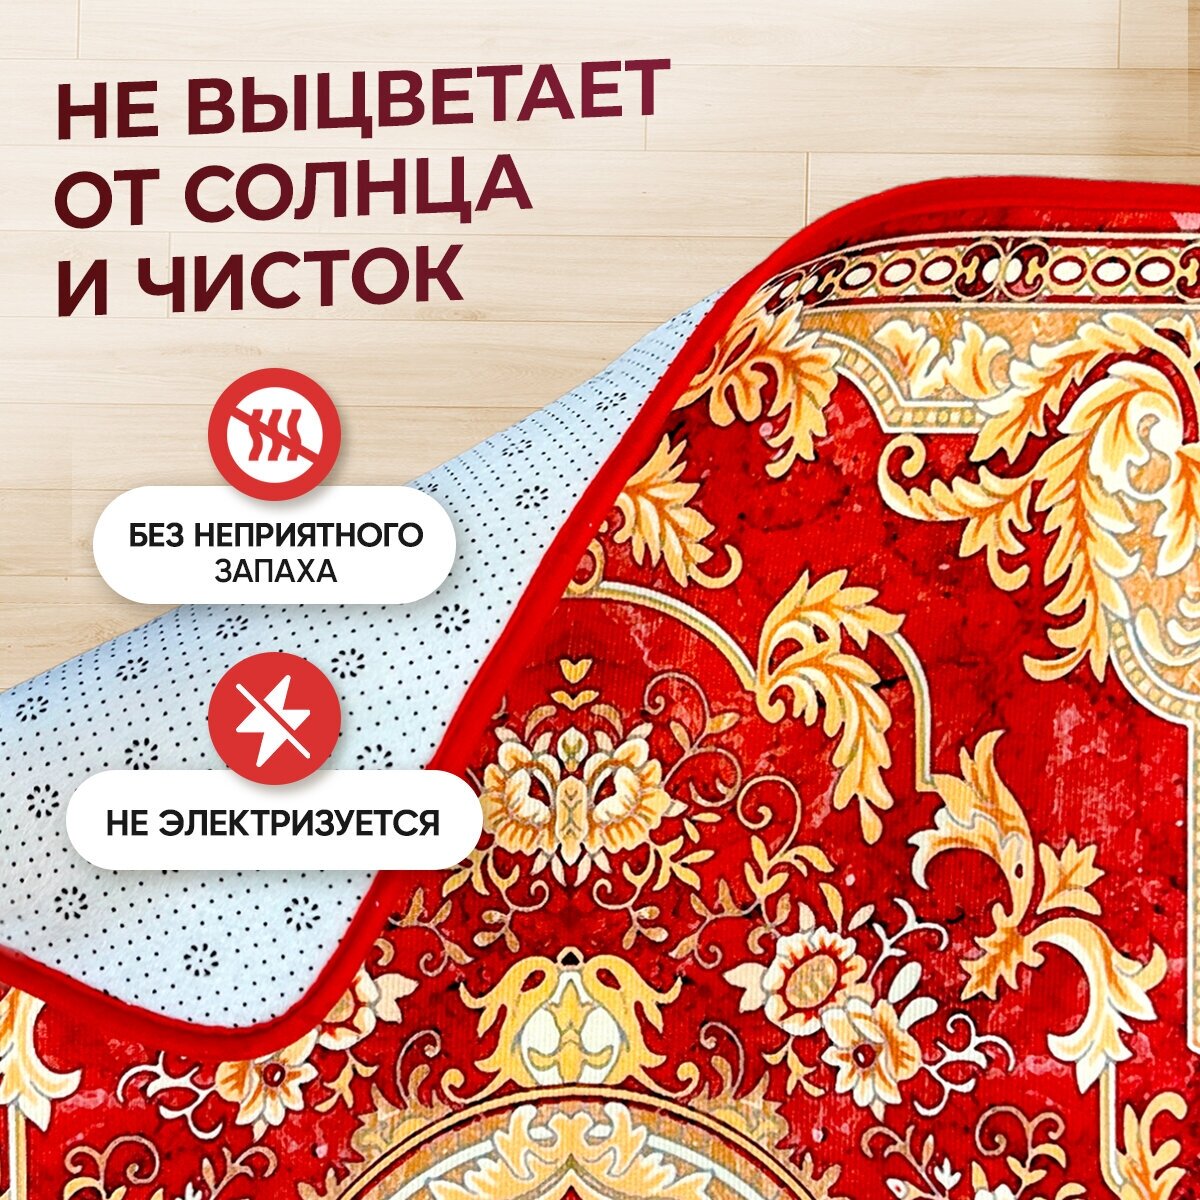 Ковёр "Великолепный век" / Домашний ковер "Золотой век", цвет красный, размер 200х150 см